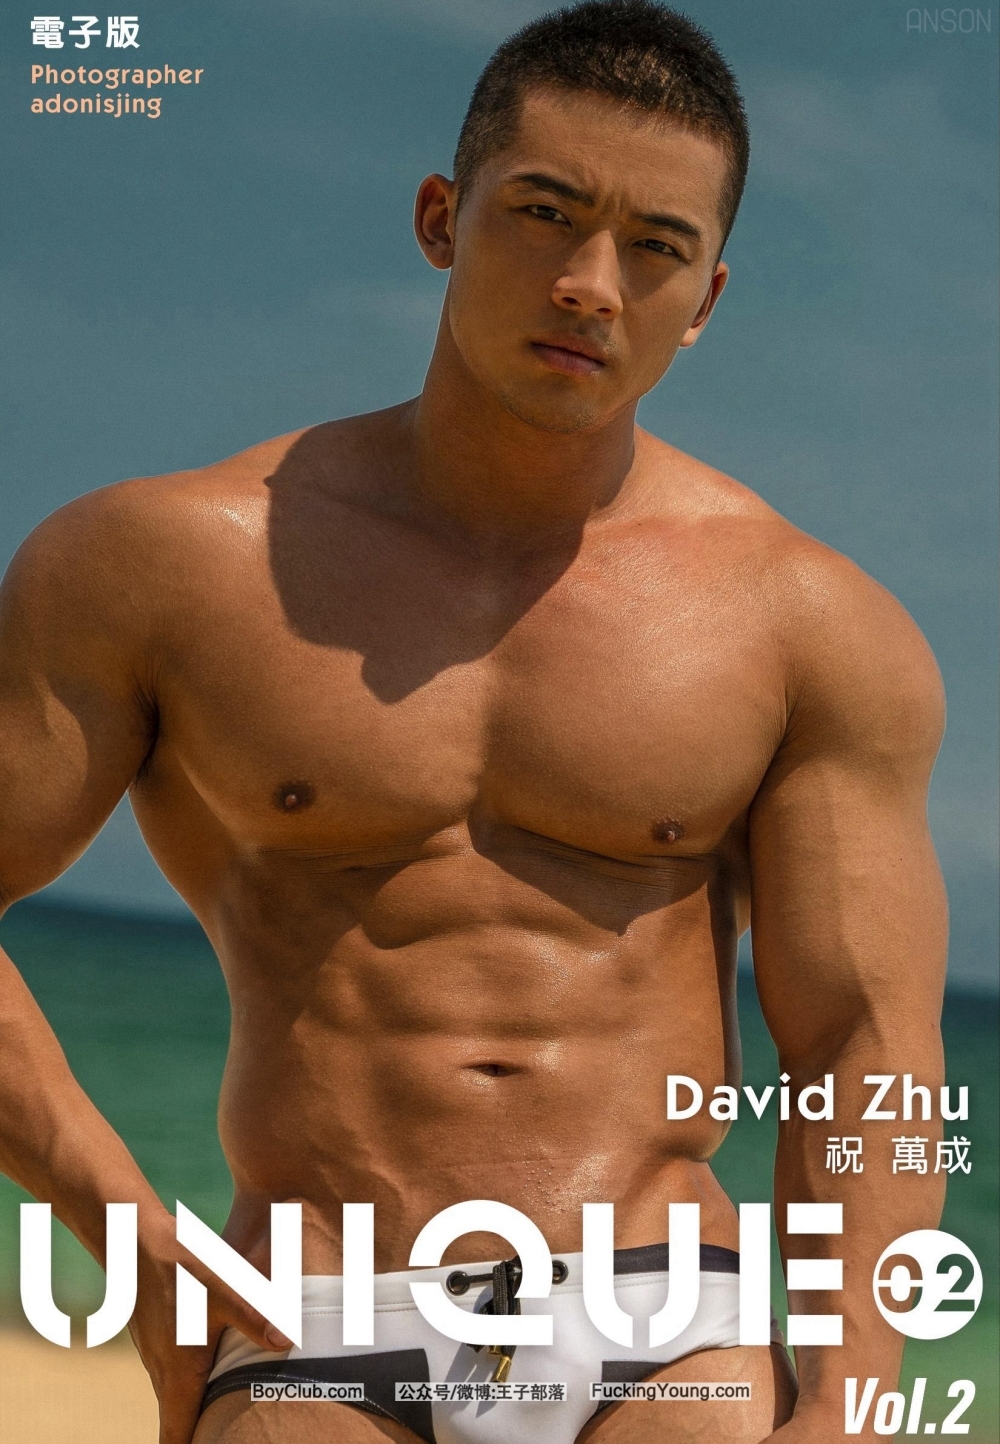 小王子社新年重磅上架+亚洲男神刊· 超完美肌肉boy-David Zhu 祝万成！！合集连更之岛屿(上)02册！98P | 共计四册·VIP看完整！